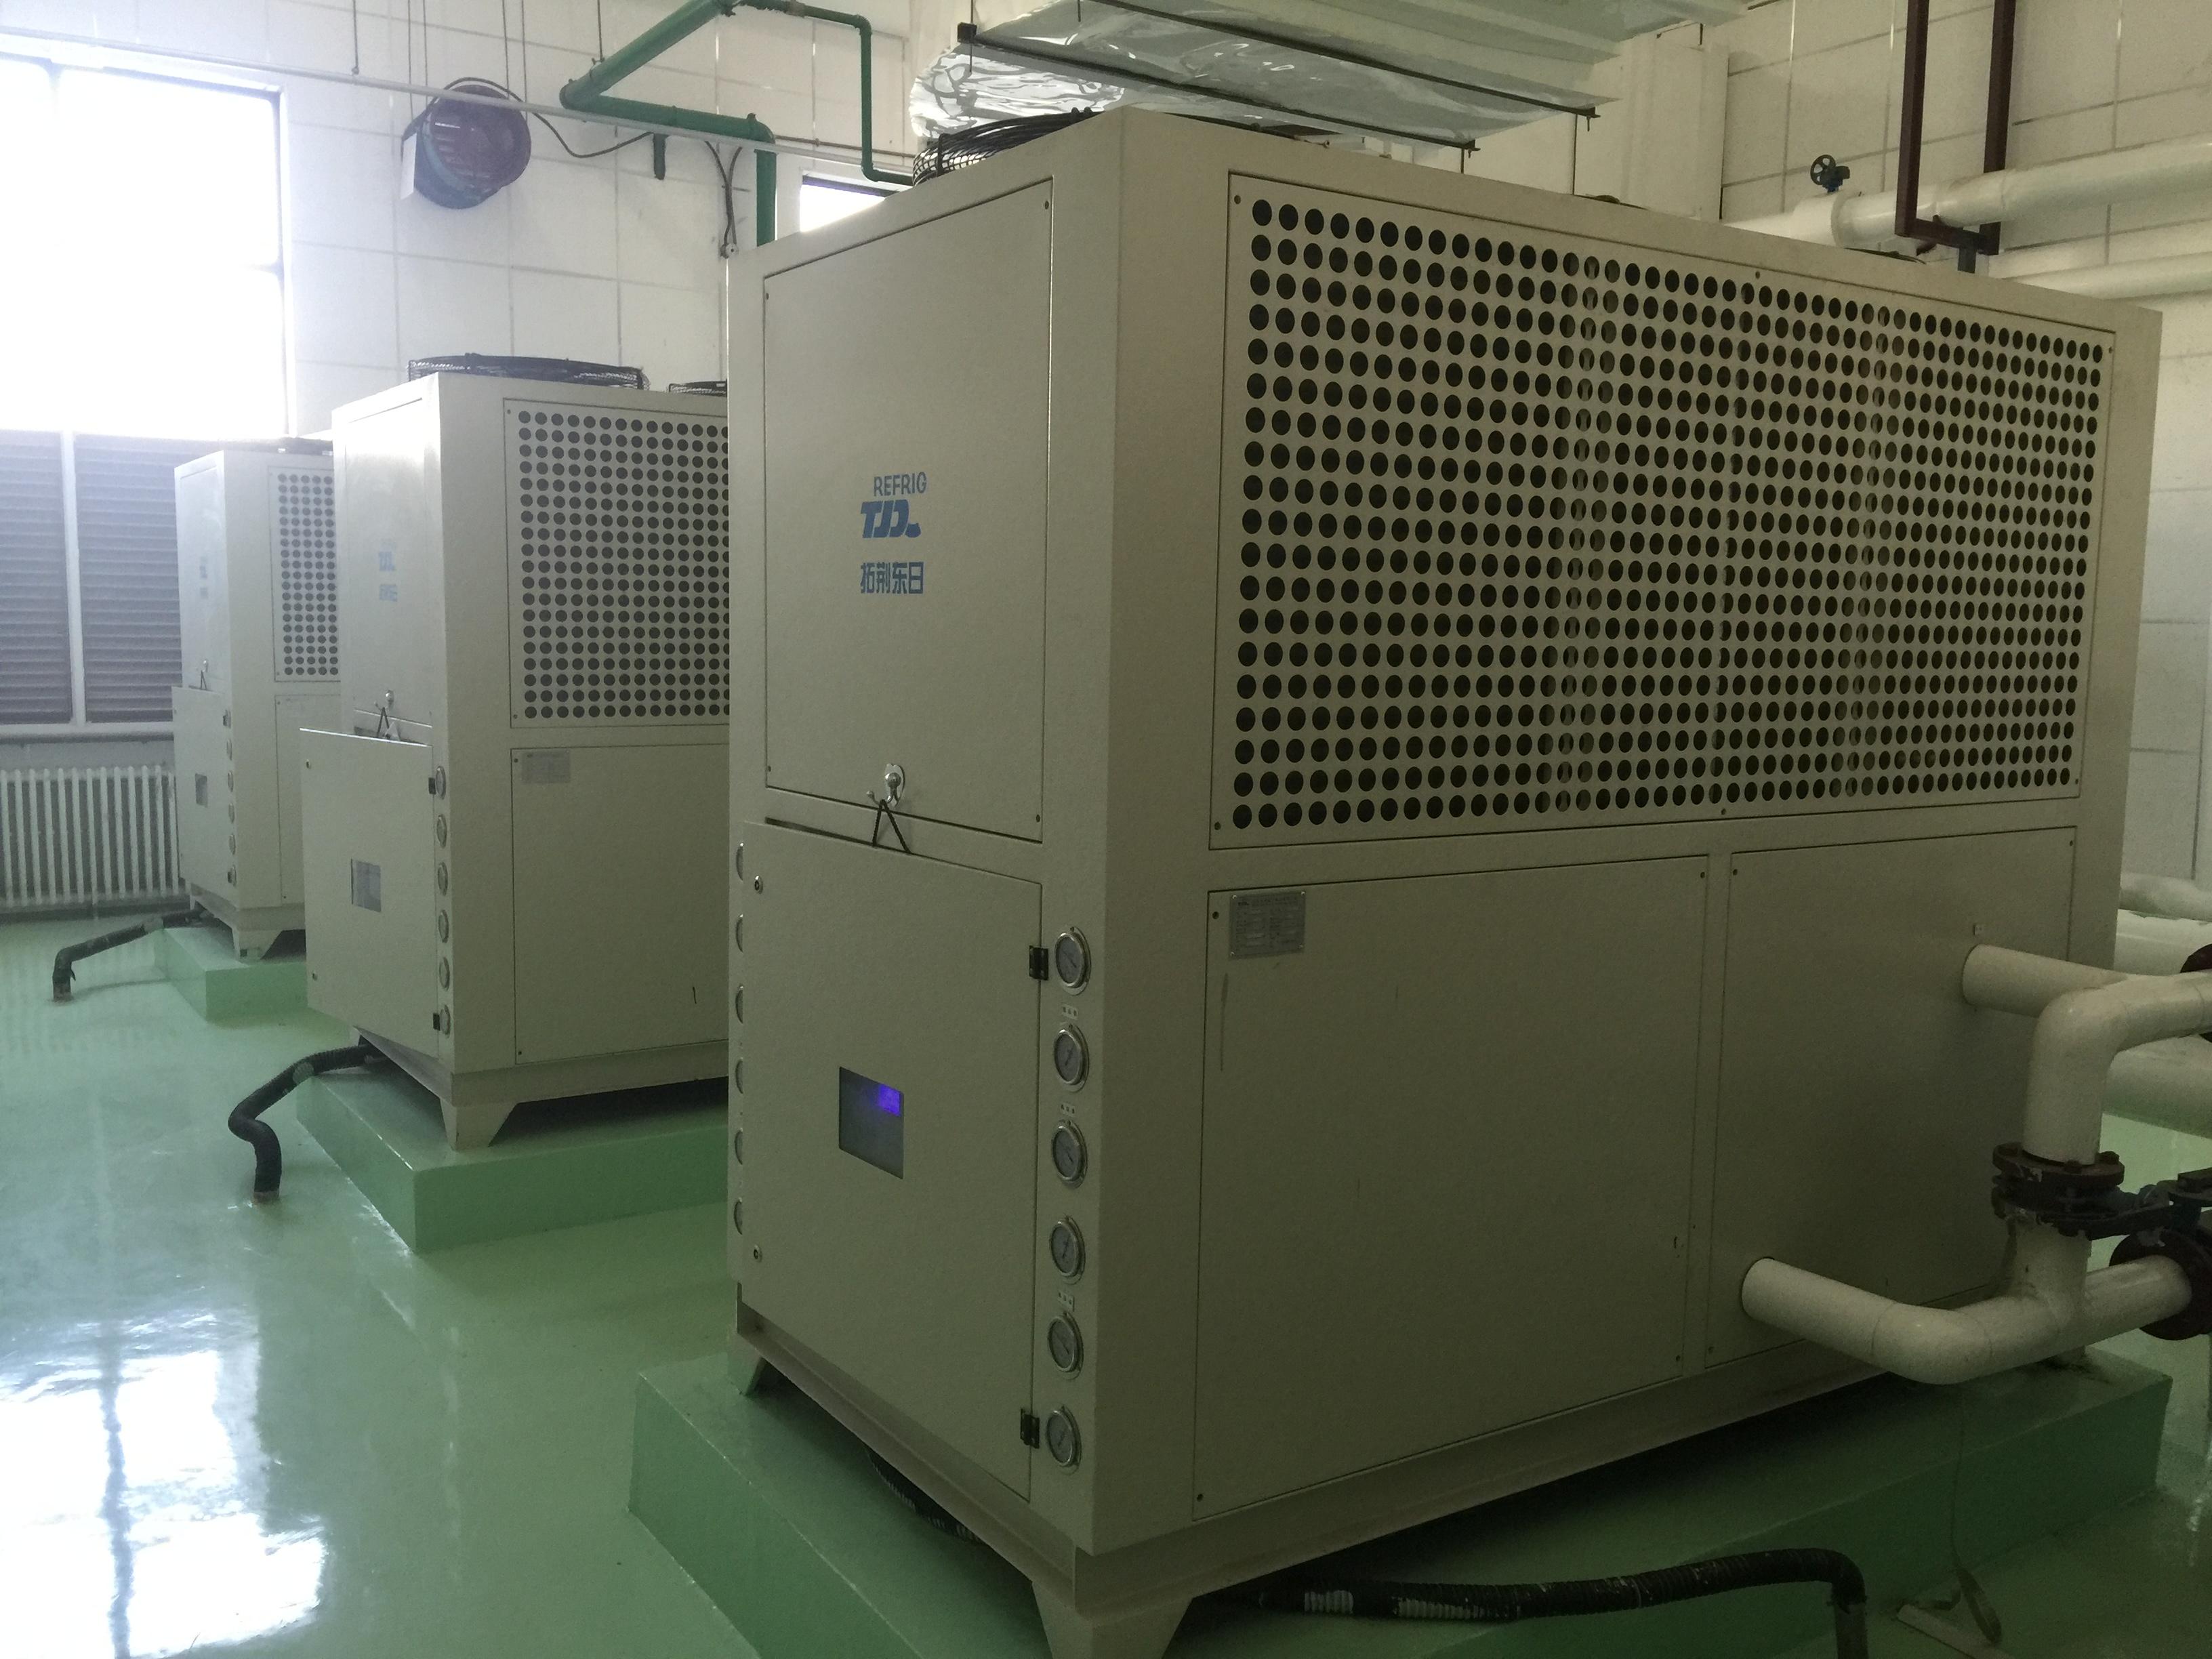 北京风冷分体式冷水机|北京小型冷却水循环机